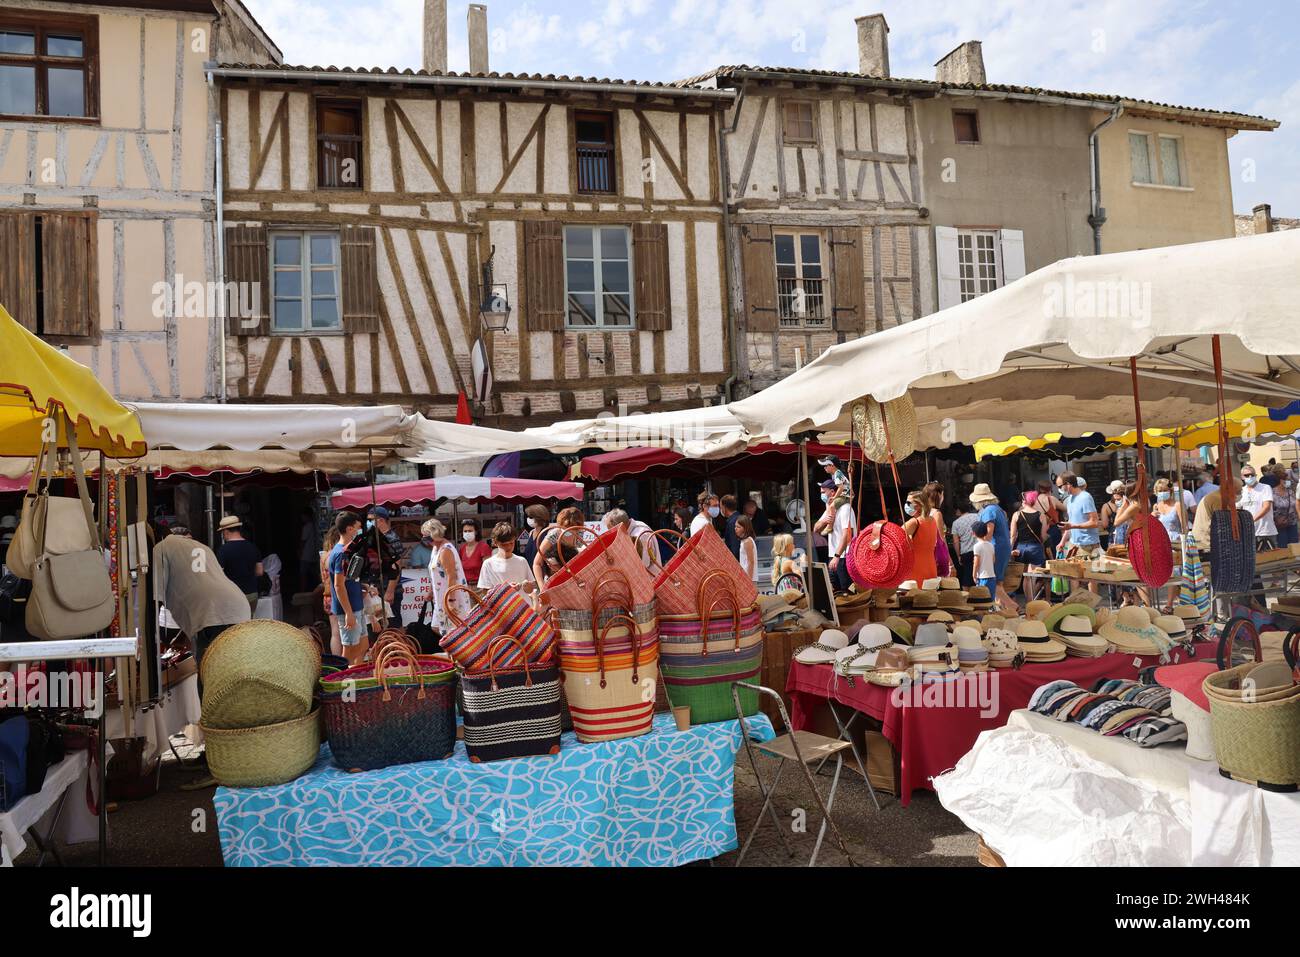 Eymet, le plus anglais des bastides françaises. Jour de marché sur la place centrale de la bastide médiévale (XIIIe siècle) d'Eymet en Périgord. La particule Banque D'Images